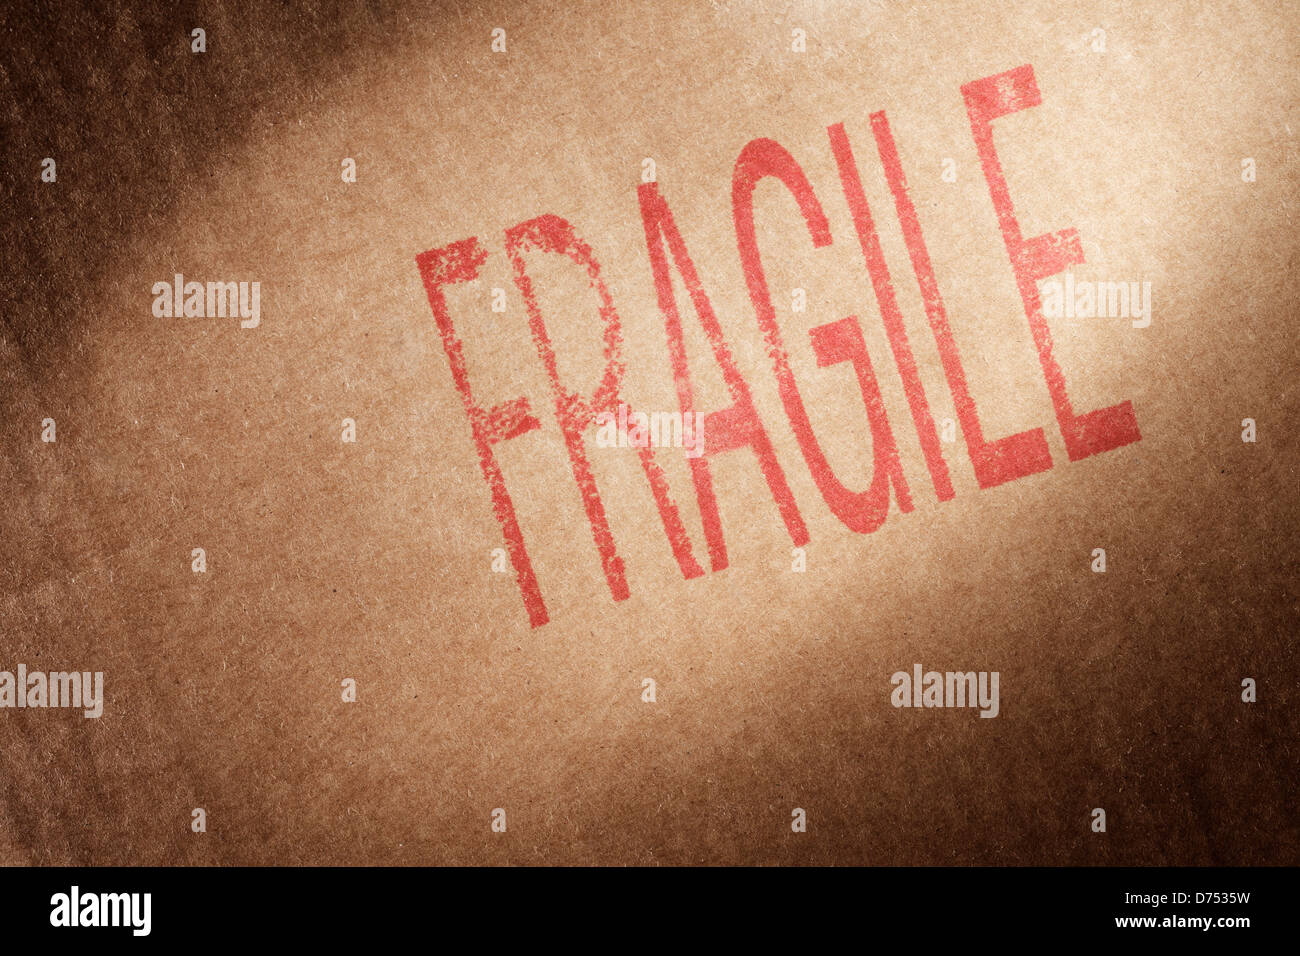 Nahaufnahme von einem braunen Karton mit Wort "Fragile" gestempelt mit roter Tinte. Stockfoto